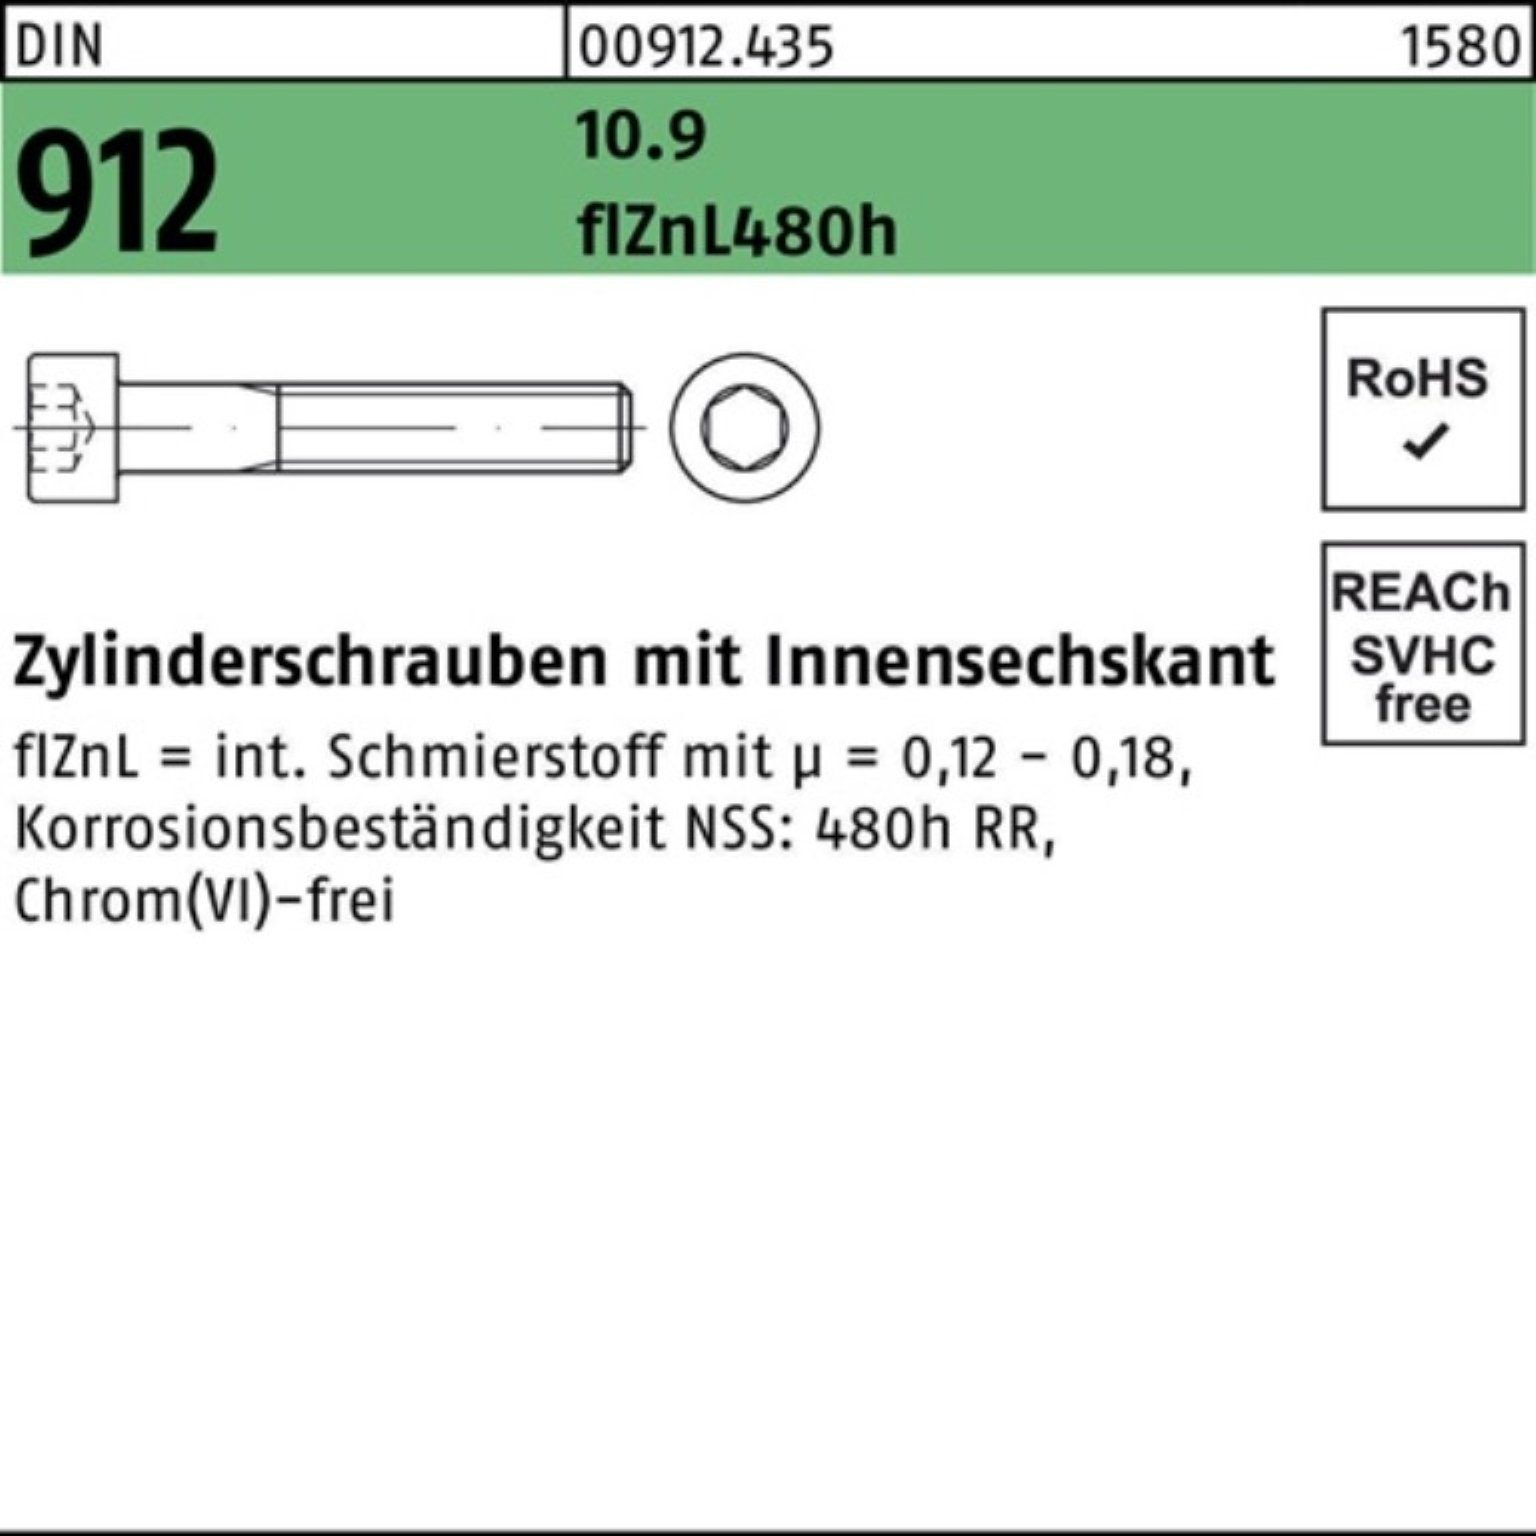 M10x100 DIN Zylinderschraube Reyher Innen-6kt 10.9 Zylinderschraube 912 Pack 100er flZnL/nc/x